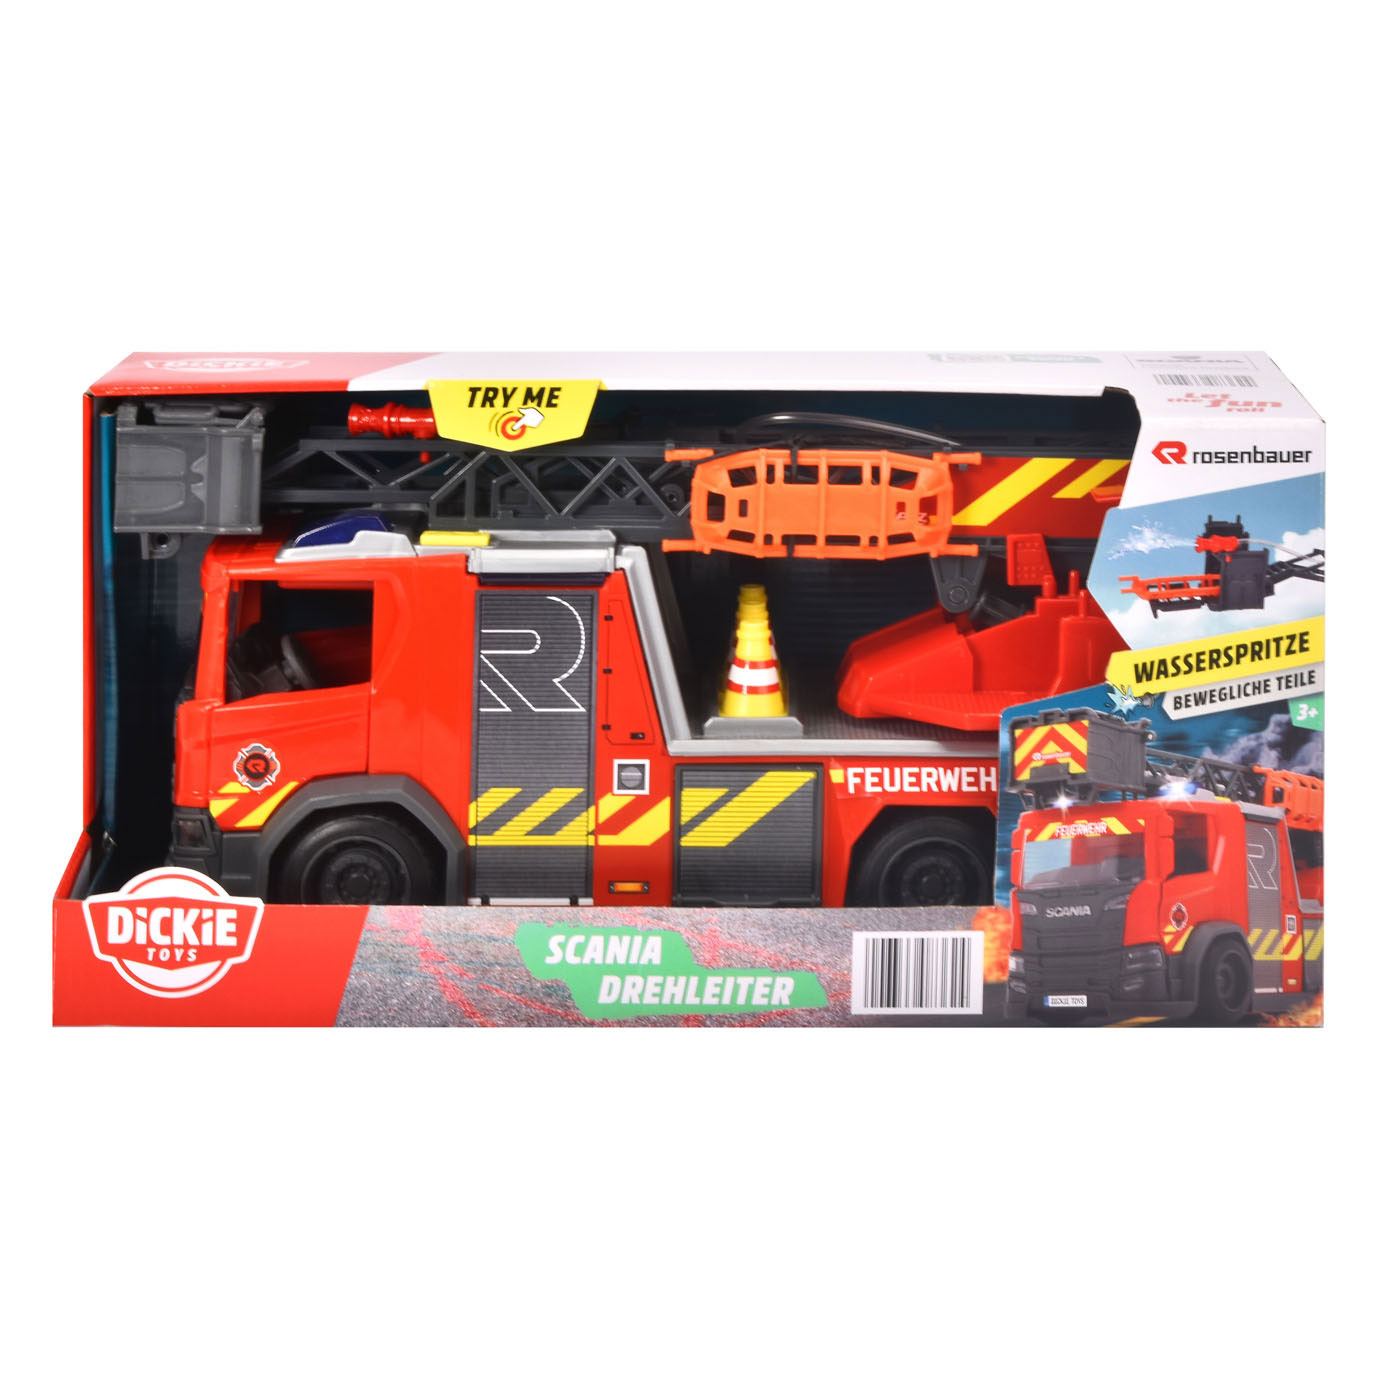 Camion de pompiers Dickie avec jet d'eau